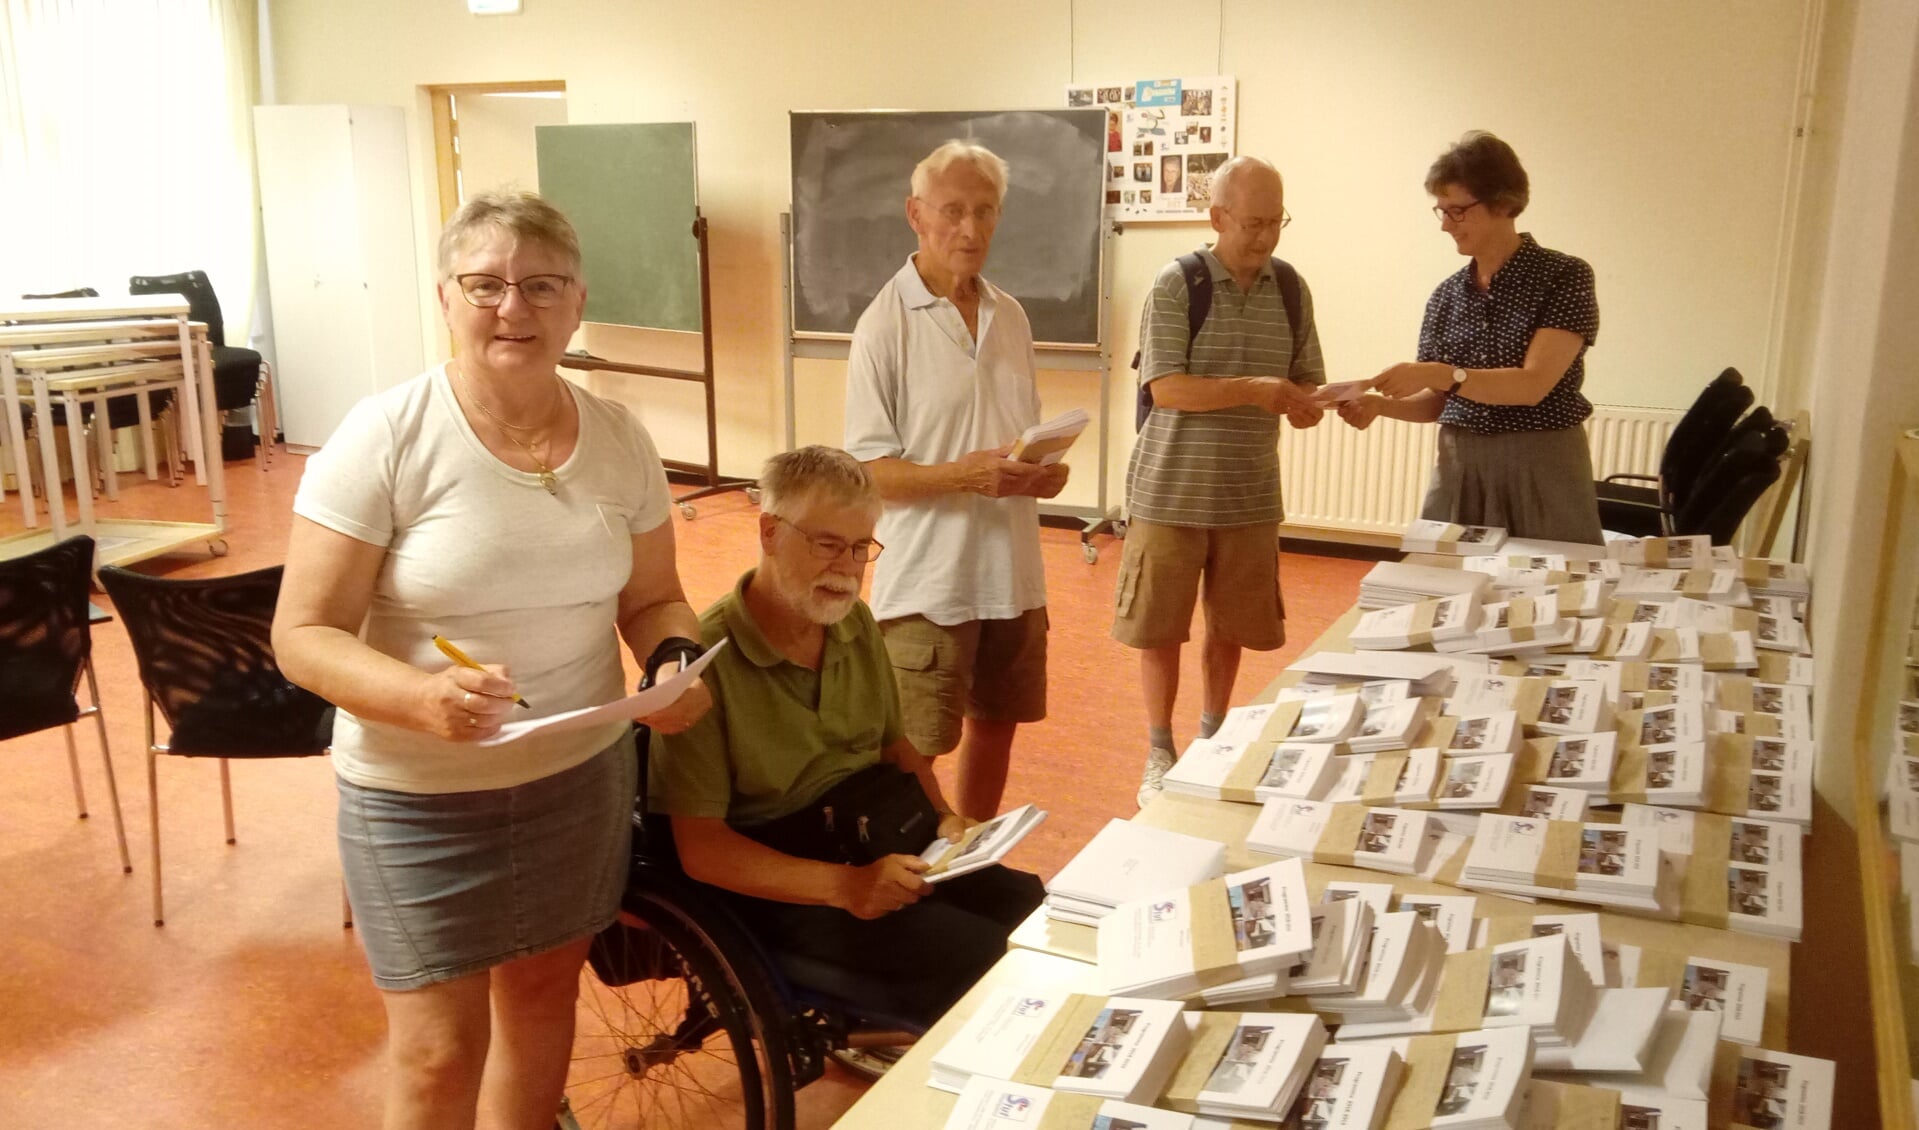 Coördinator Erna van Kempen (uiterst rechts) deelt de programmaboekjes uit aan vrijwilligers die de boekjes bezorgen. (Foto: Bos Media Services)